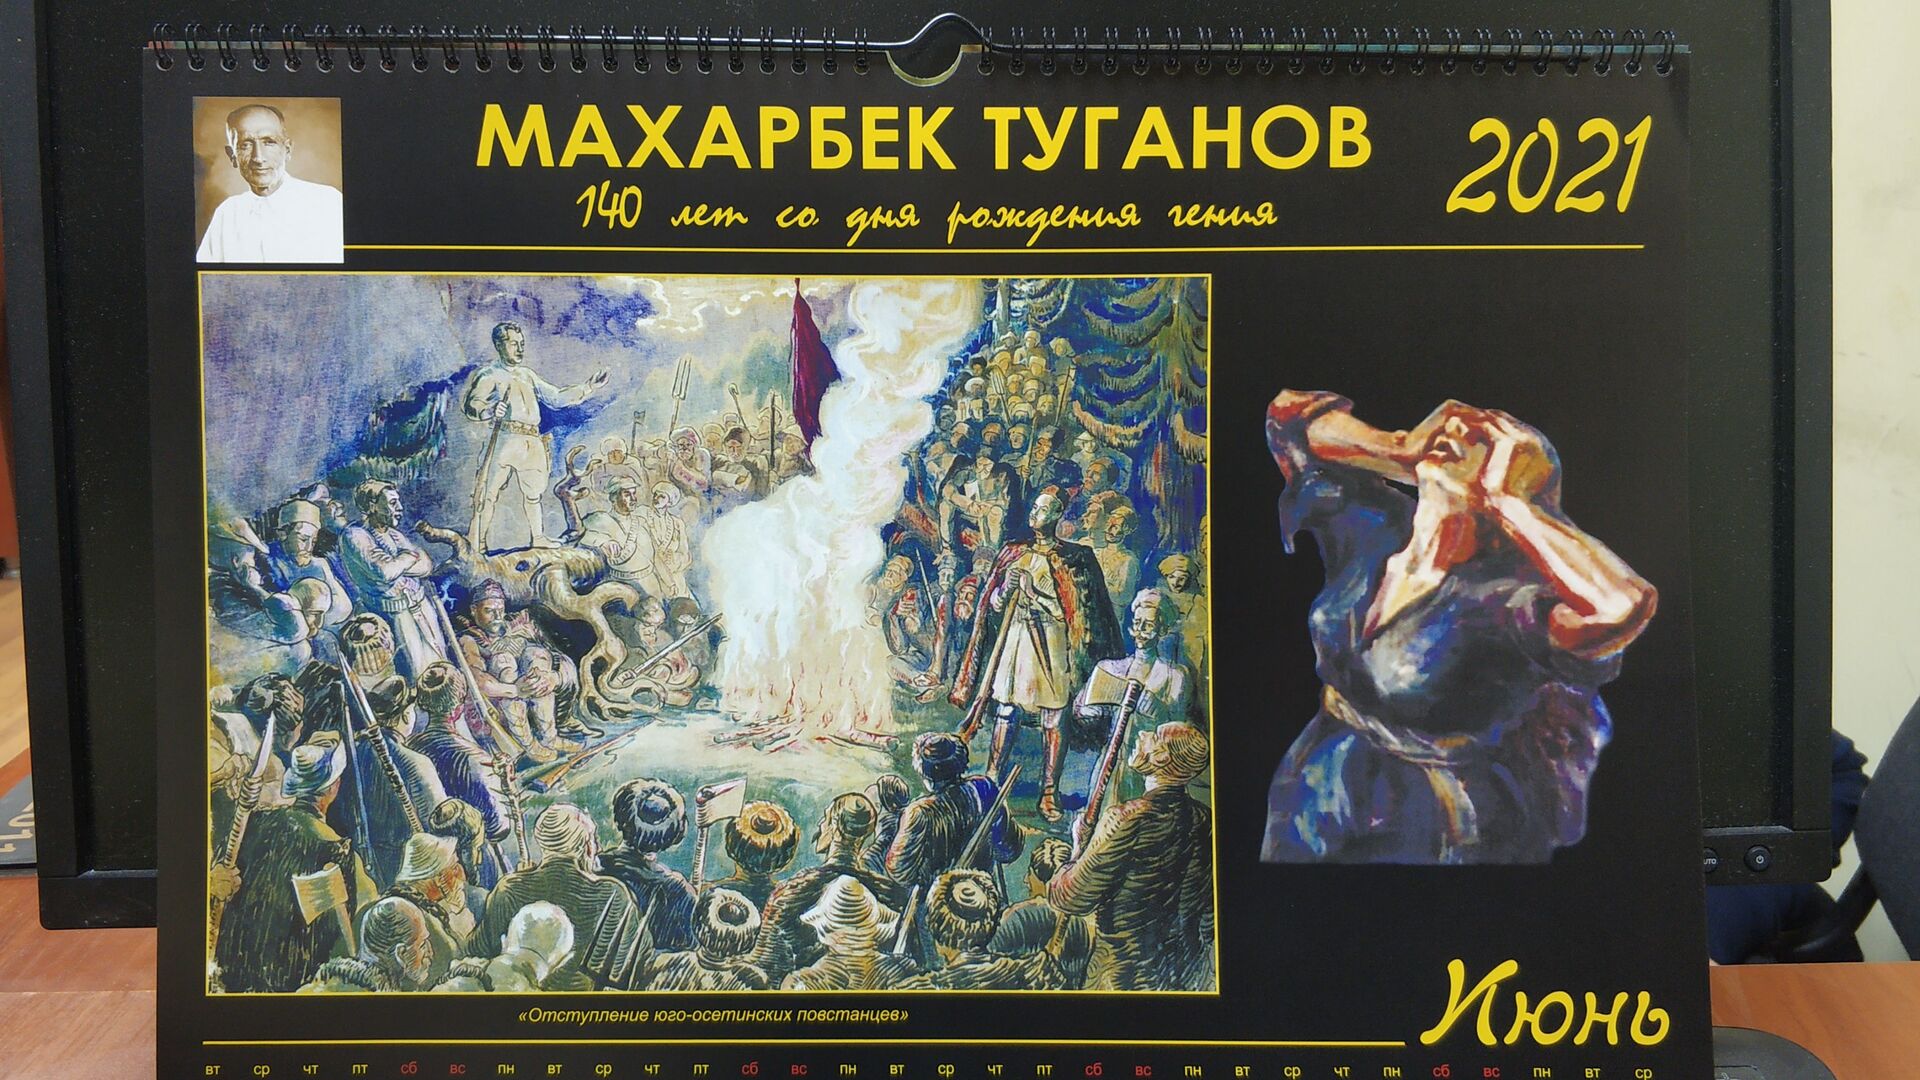 К юбилею Махарбега Туганова в Цхинвале вышел календарь с репродукциями его работ - Sputnik Южная Осетия, 1920, 23.03.2021